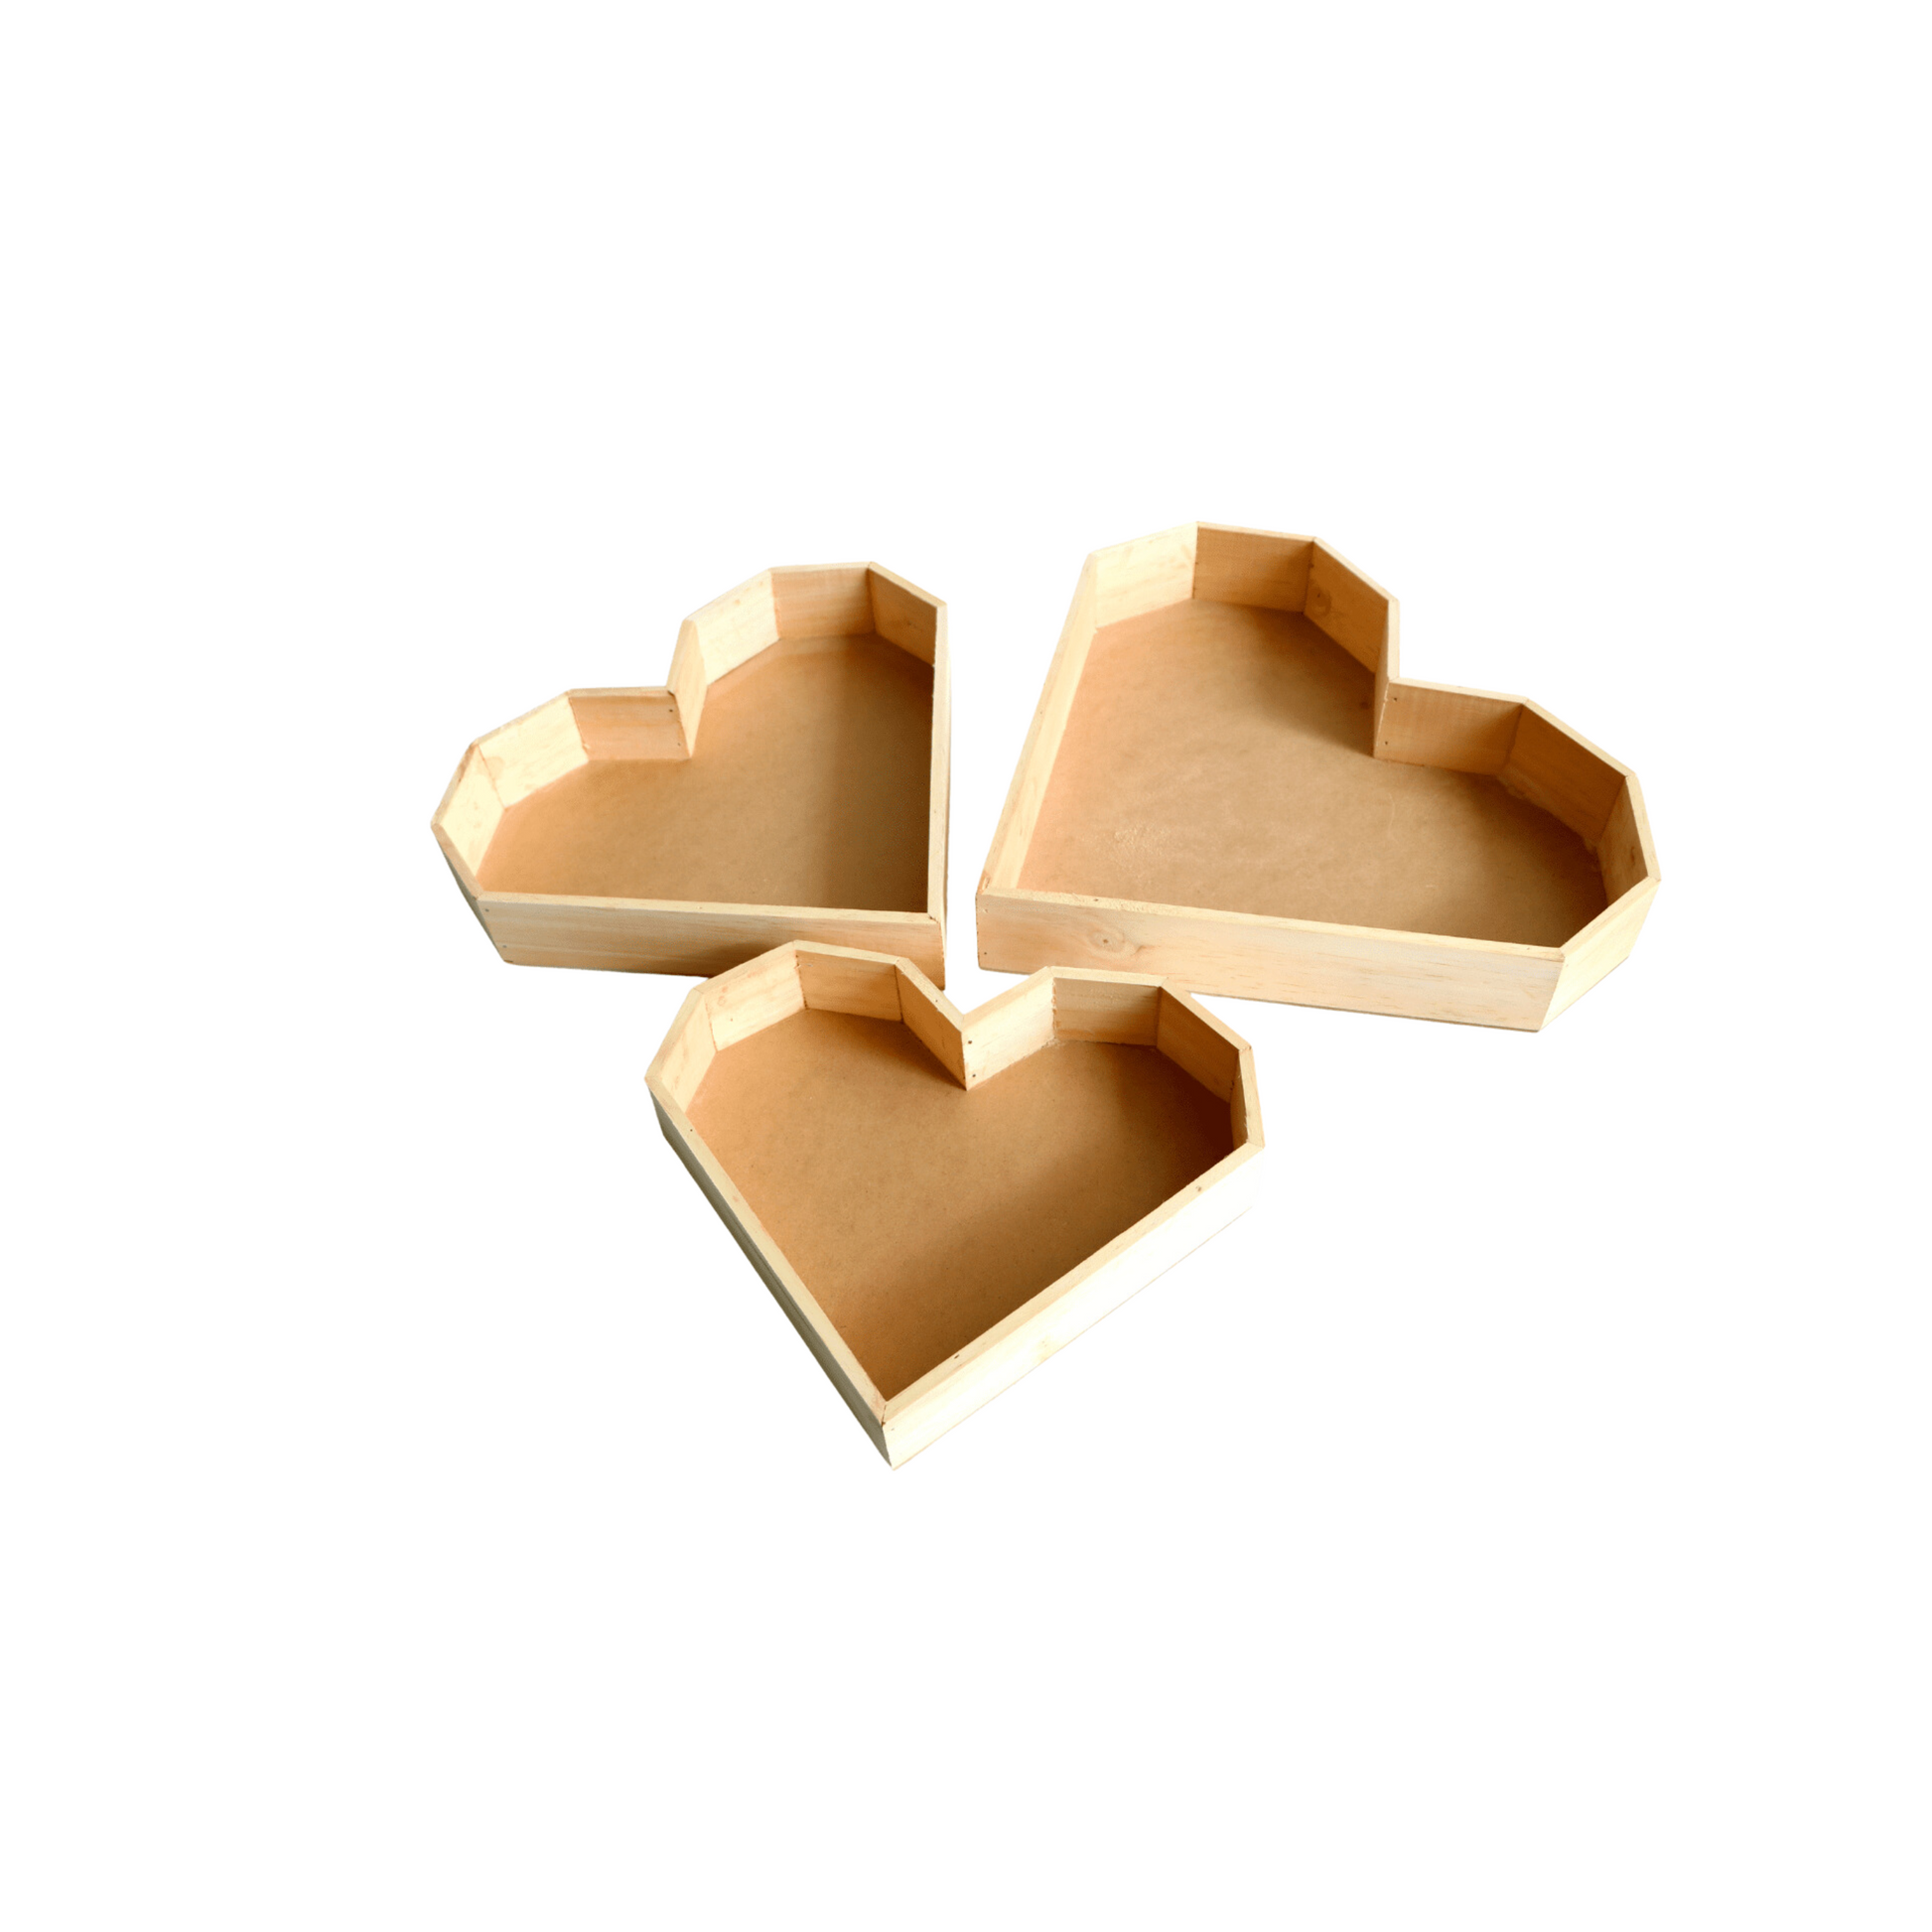 Wood Heart Shaped Tray